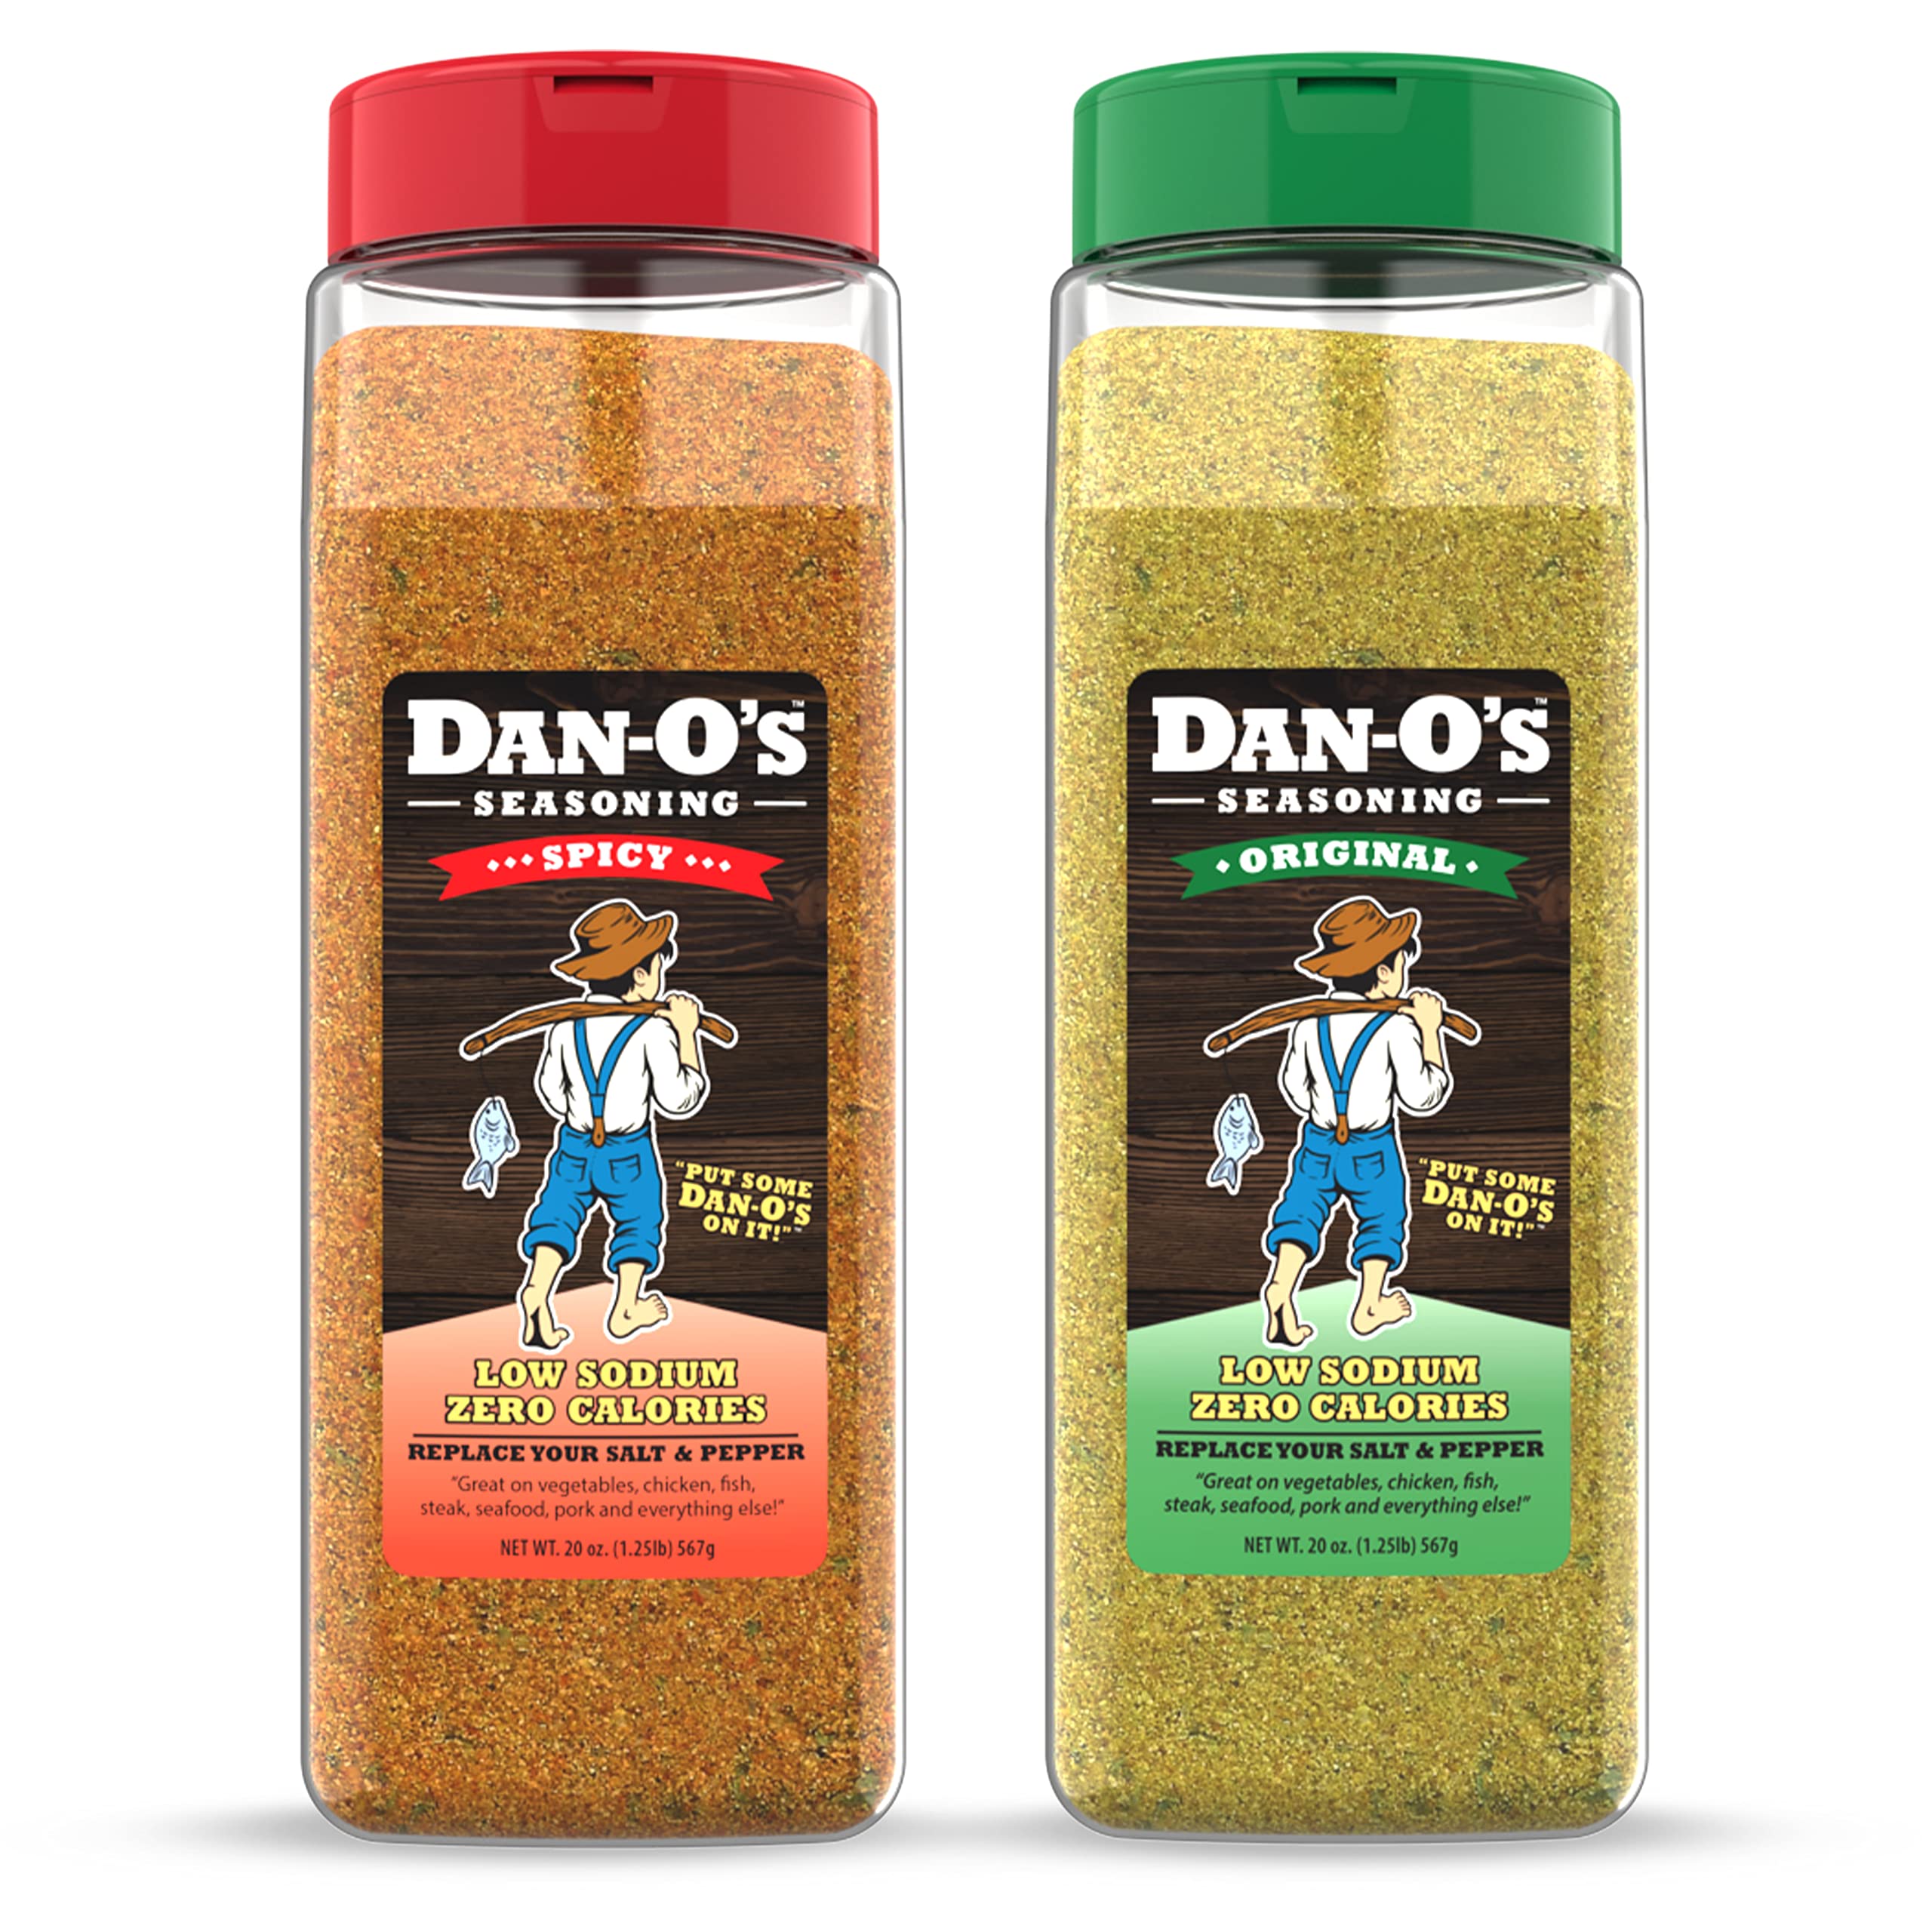 2 pack) Dan-O's Original Seasoning - All-Natural, 20oz 